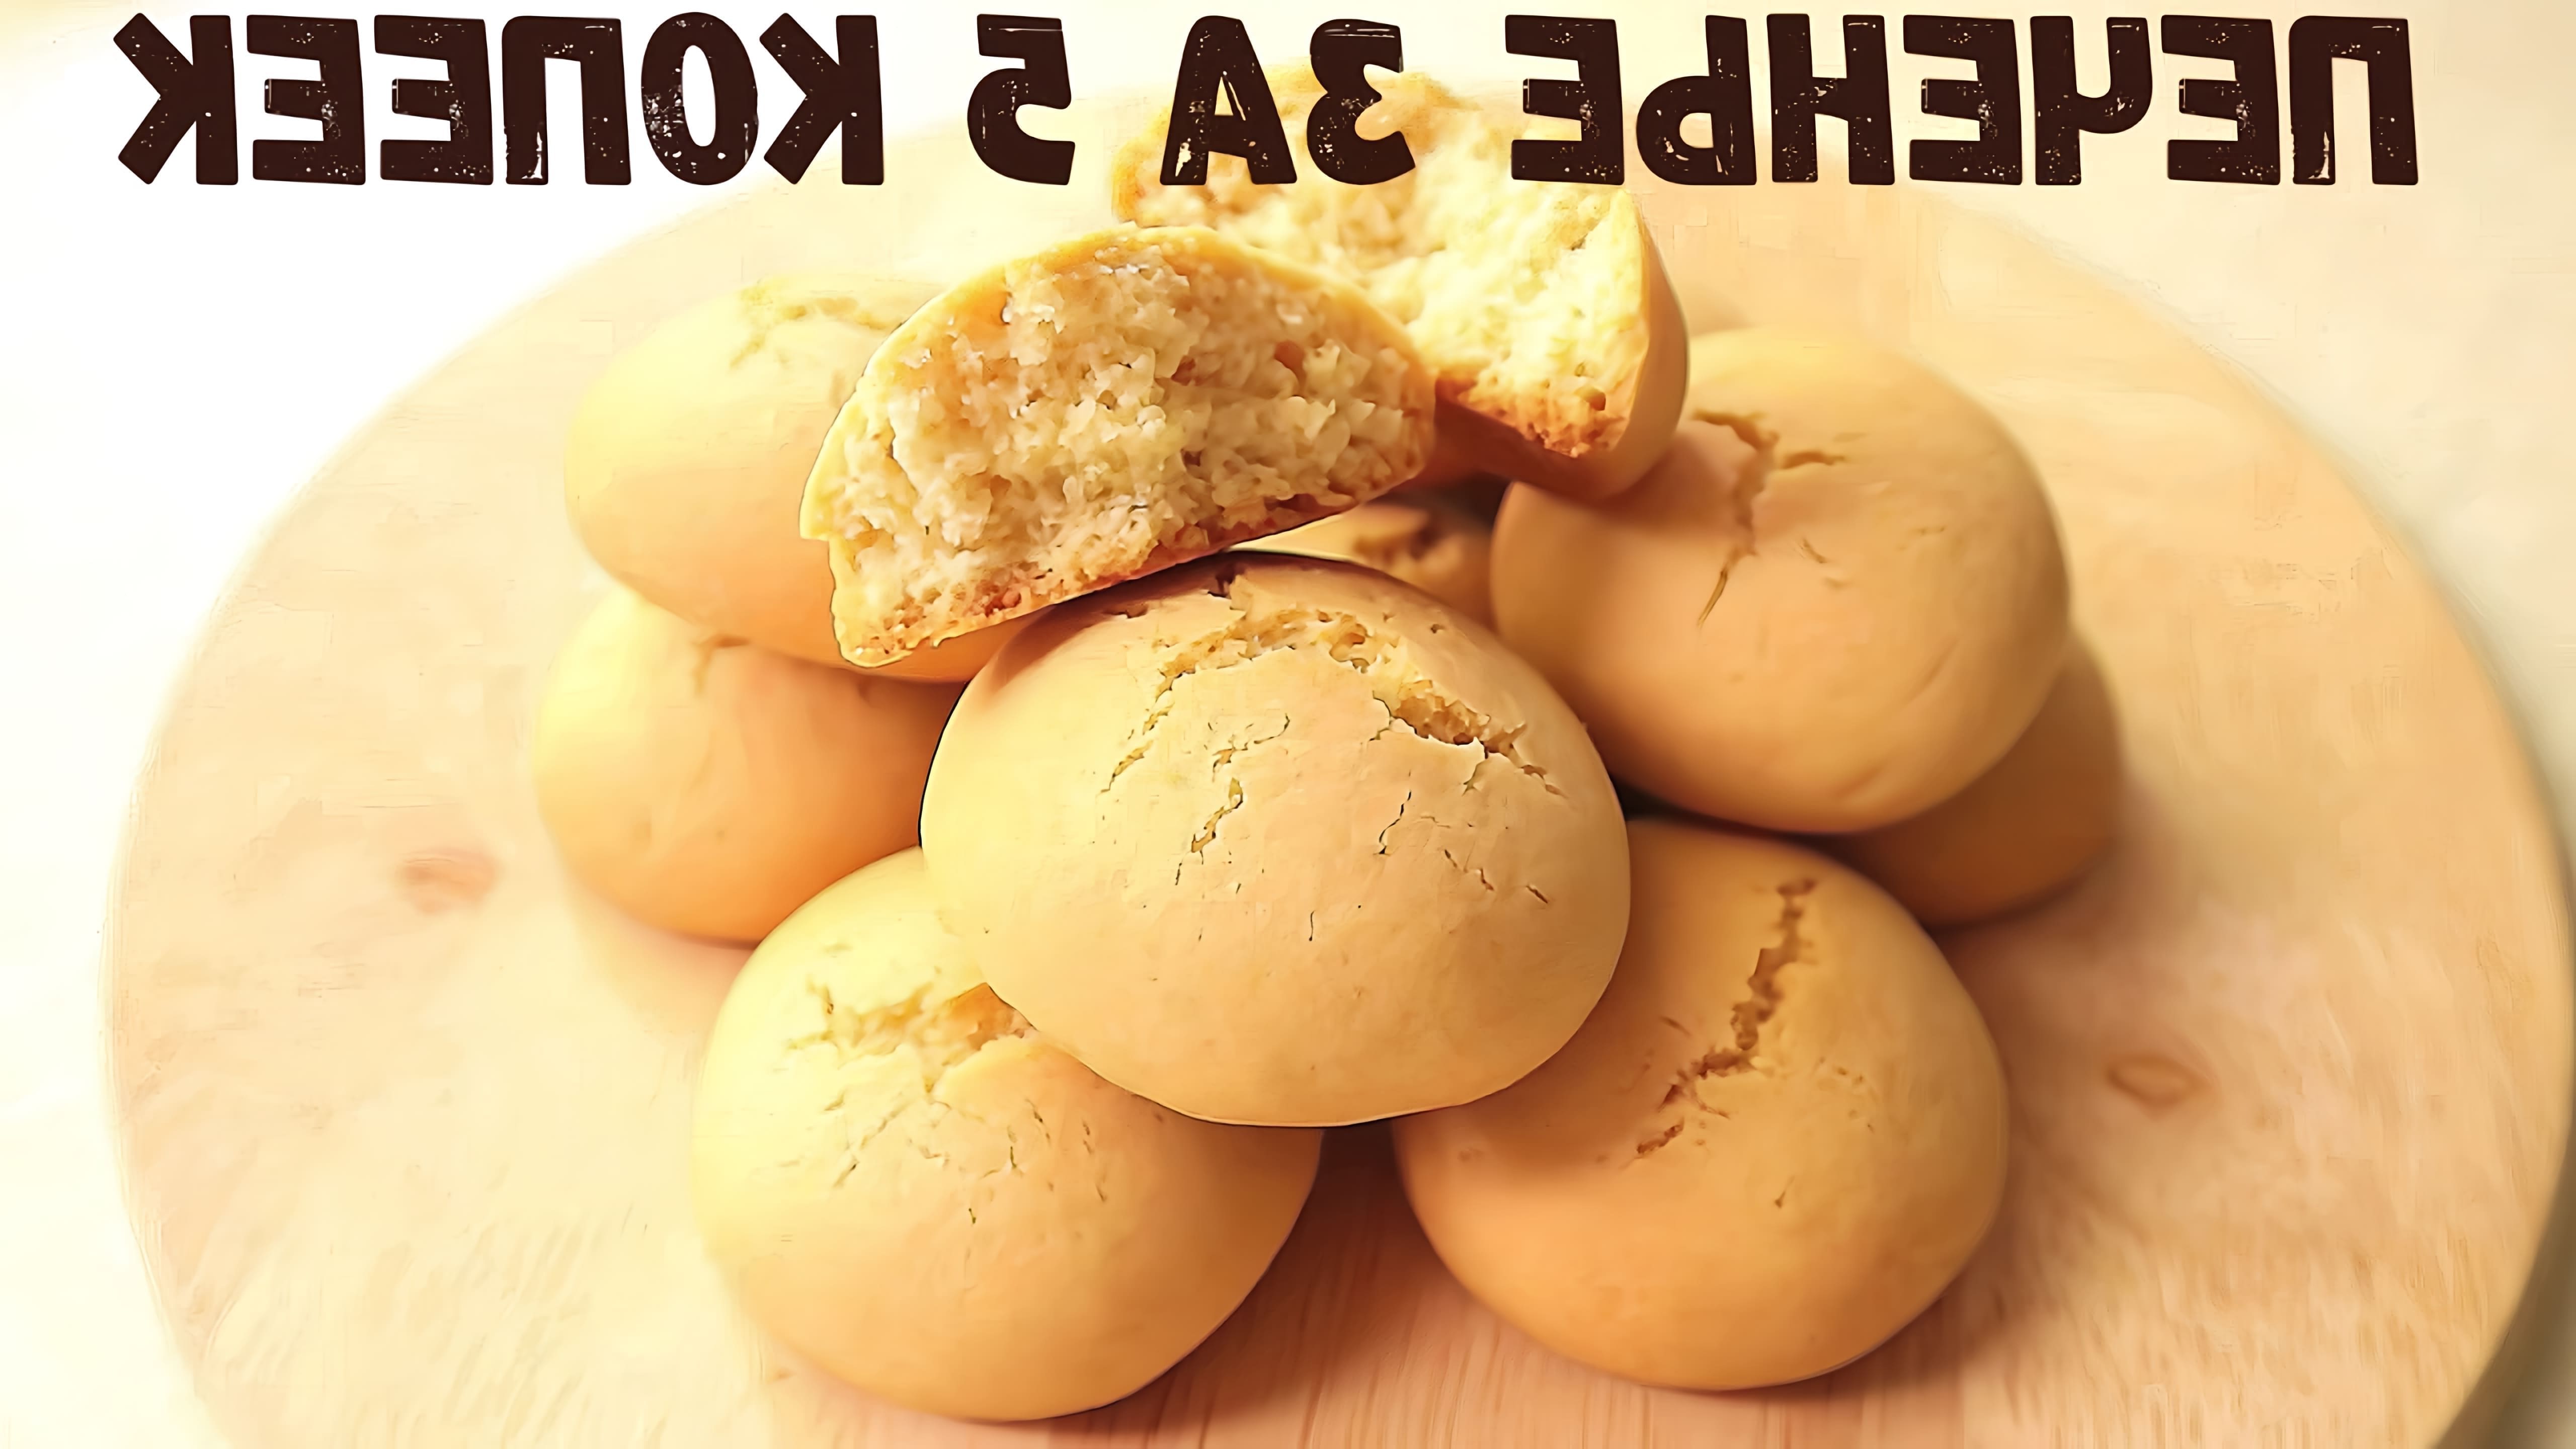 В этом видео демонстрируется рецепт песочного печенья на растительном масле